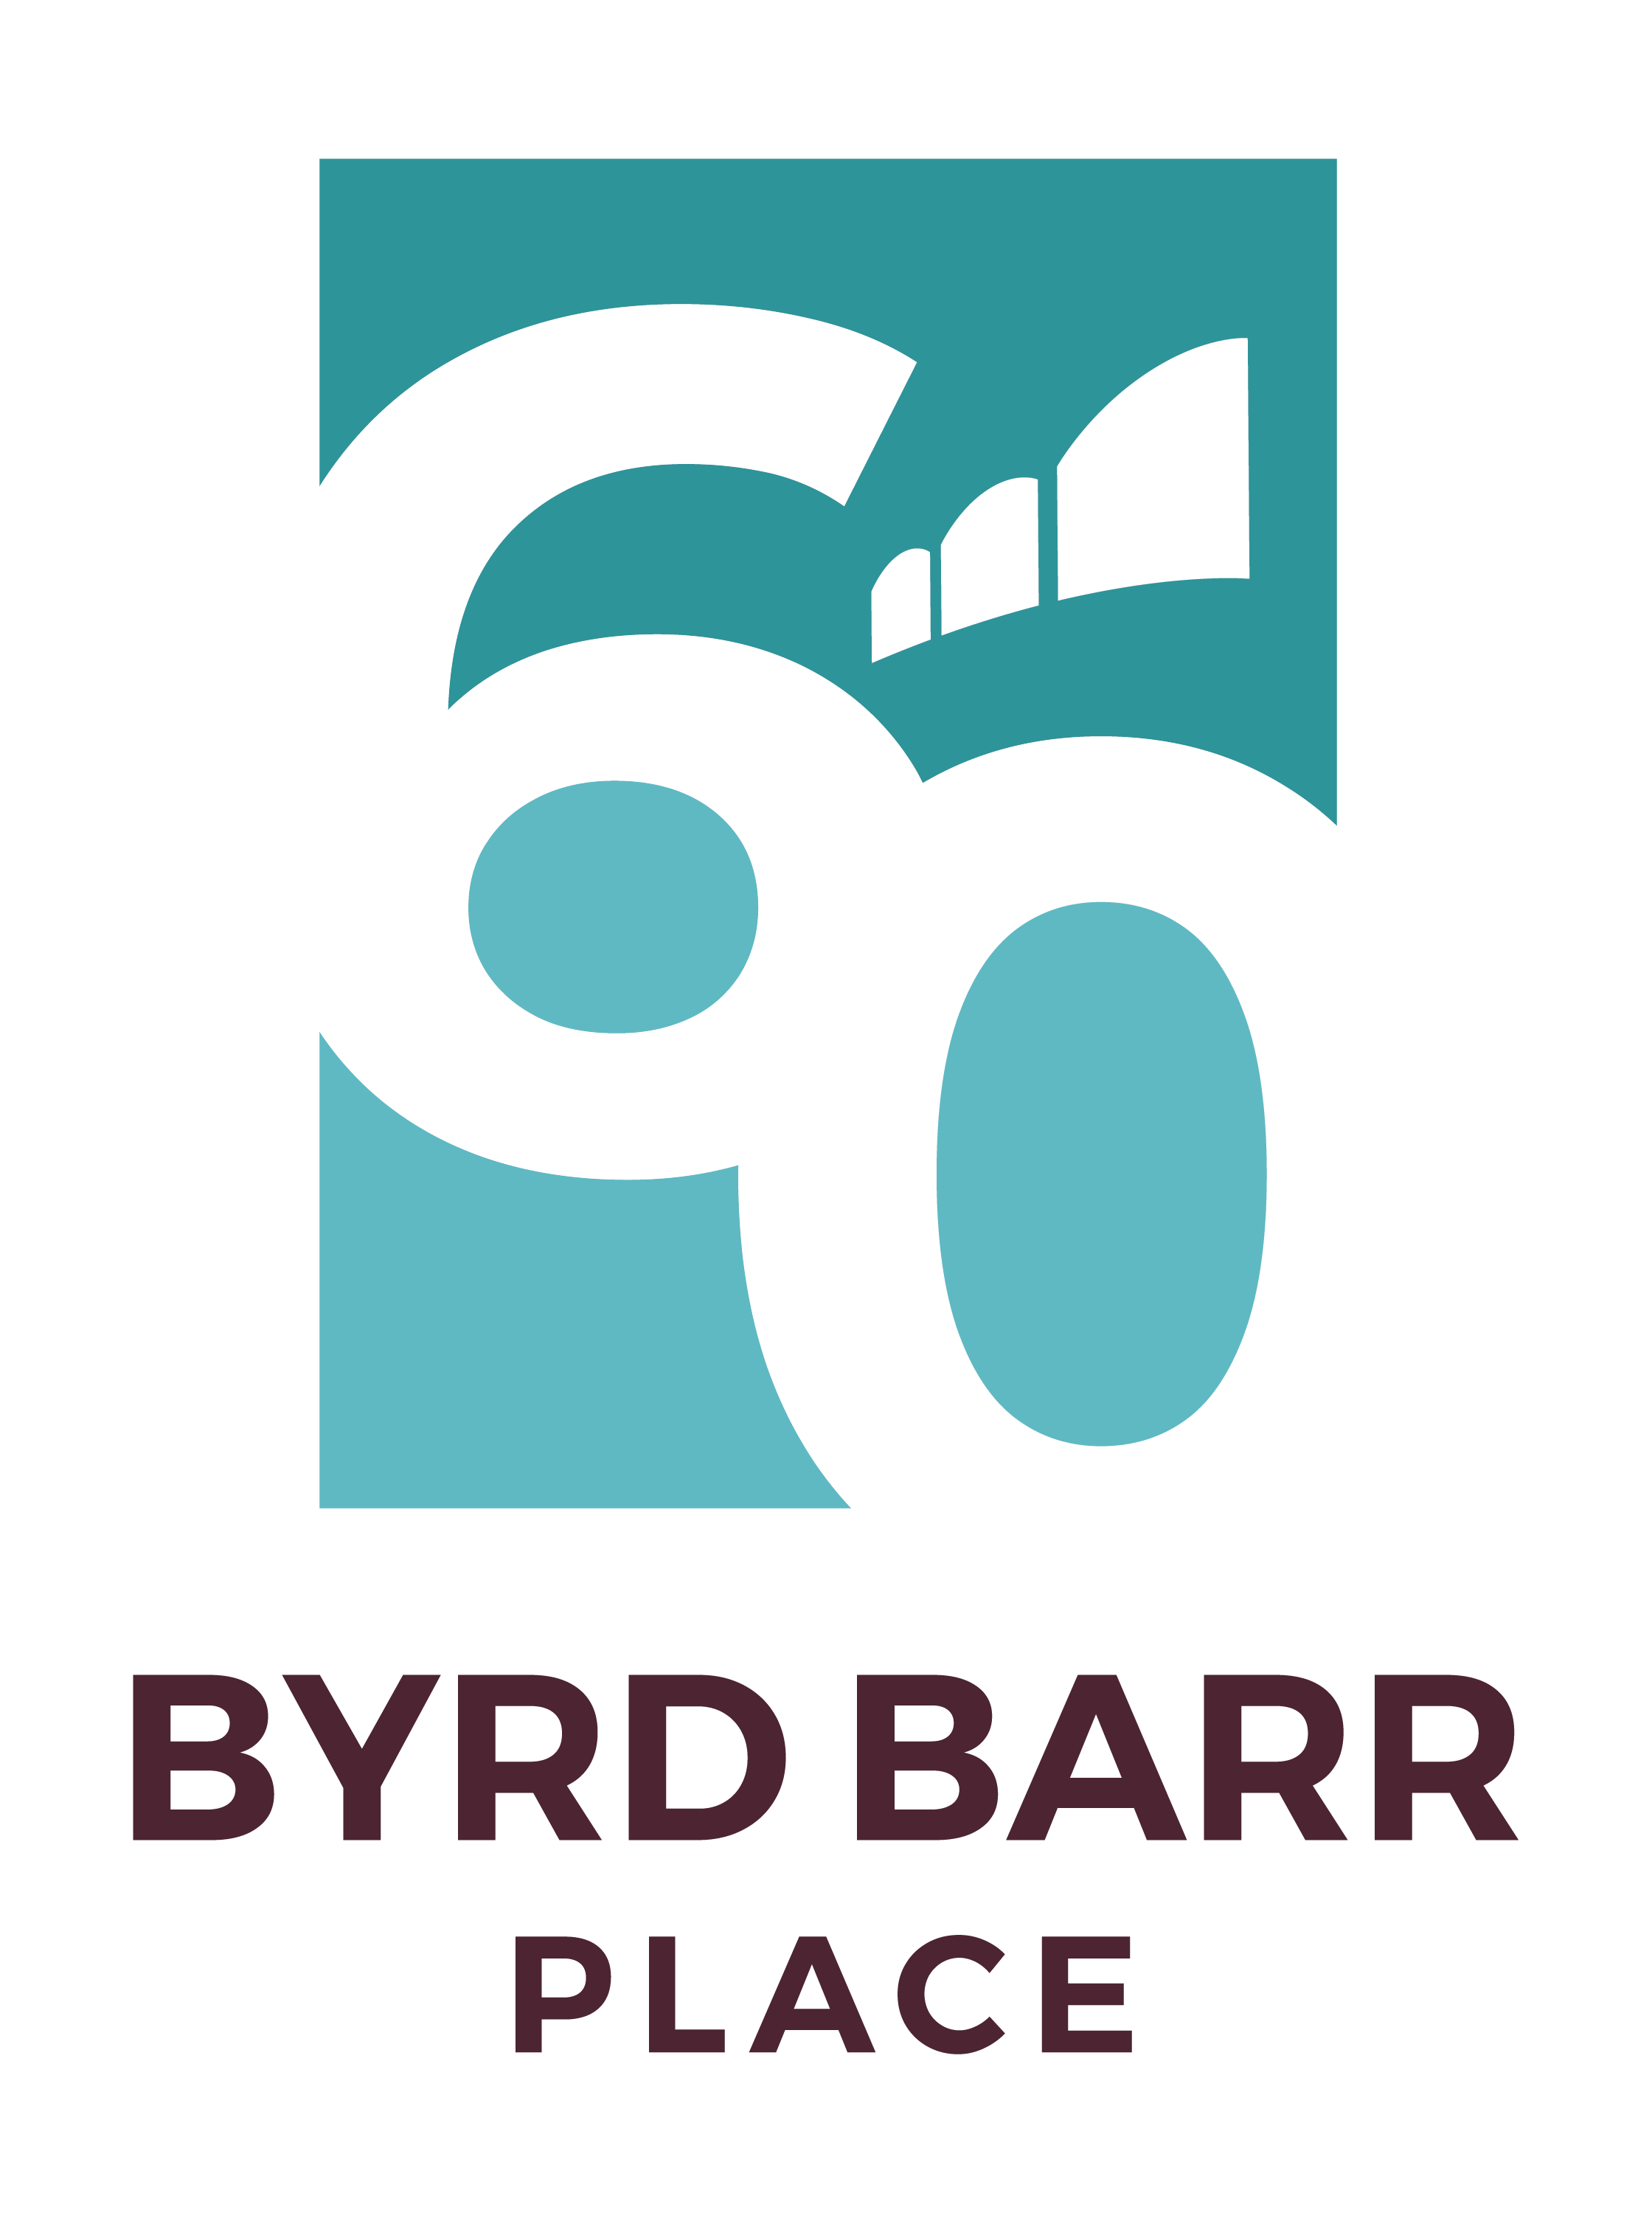 Byrd Barr Place logo